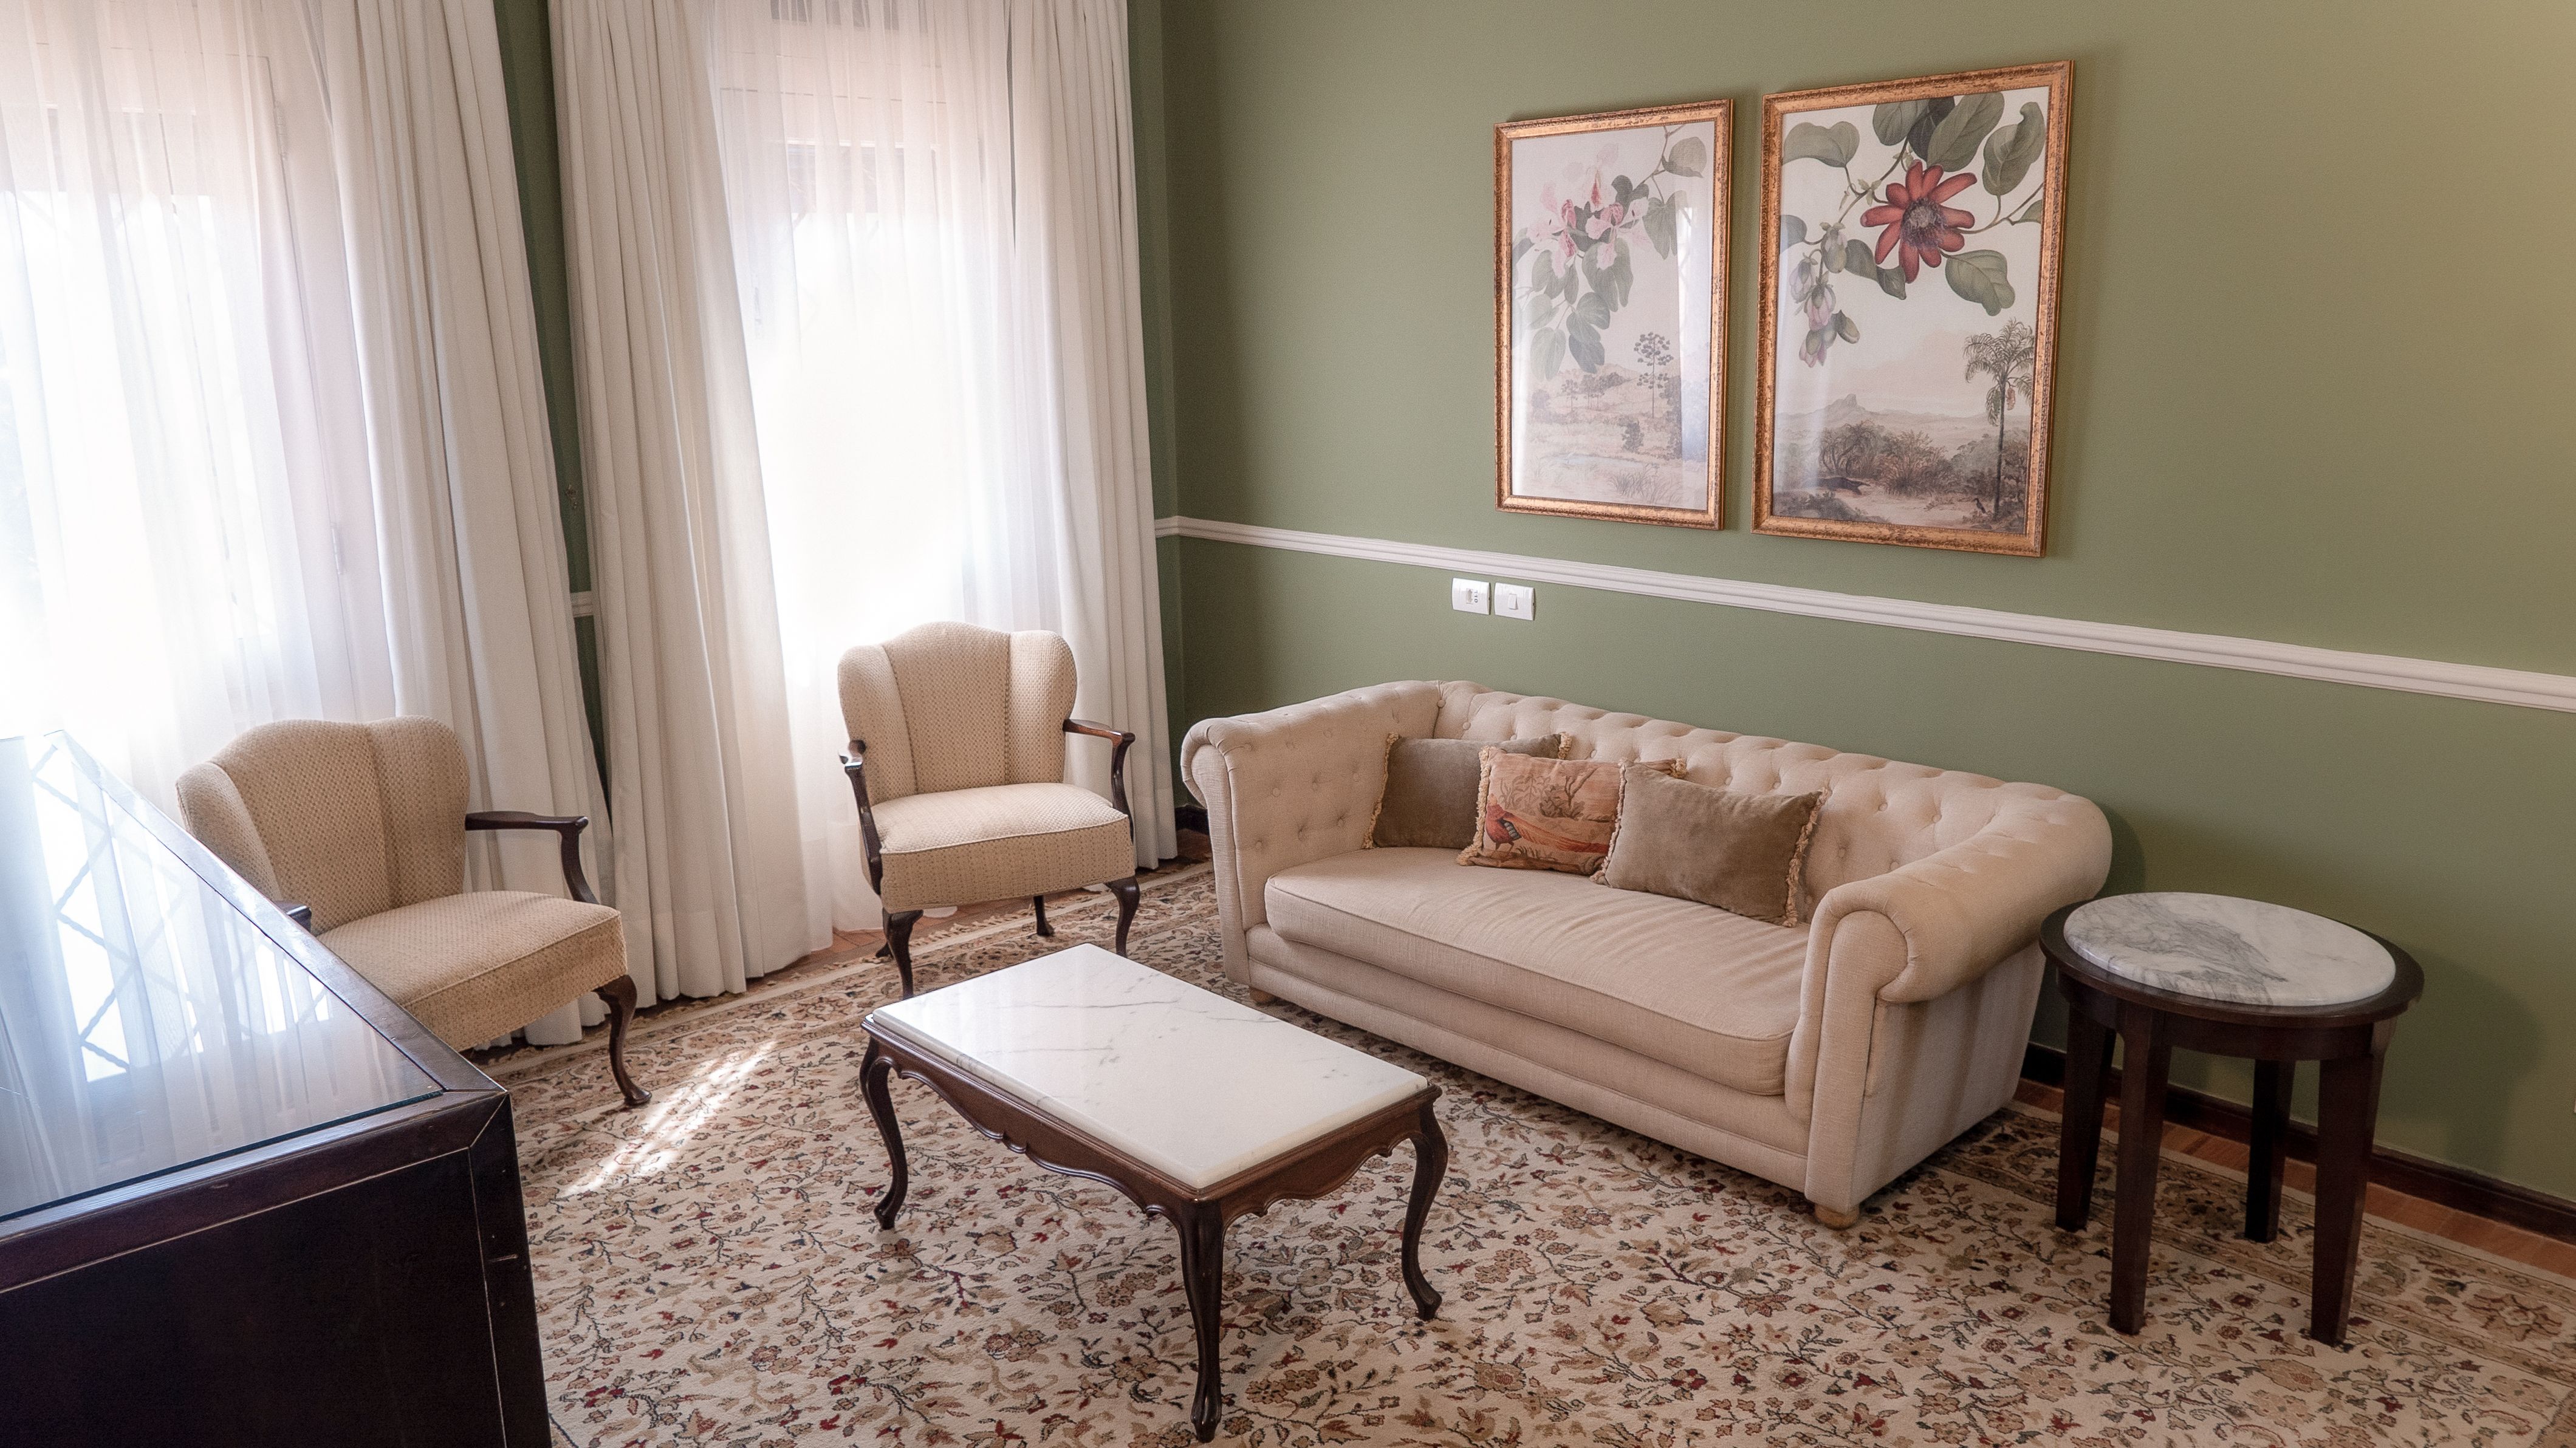 A fotografia colorida mostra uma sala de estar com móveis antigos em creme, parede verde e pinturas florais